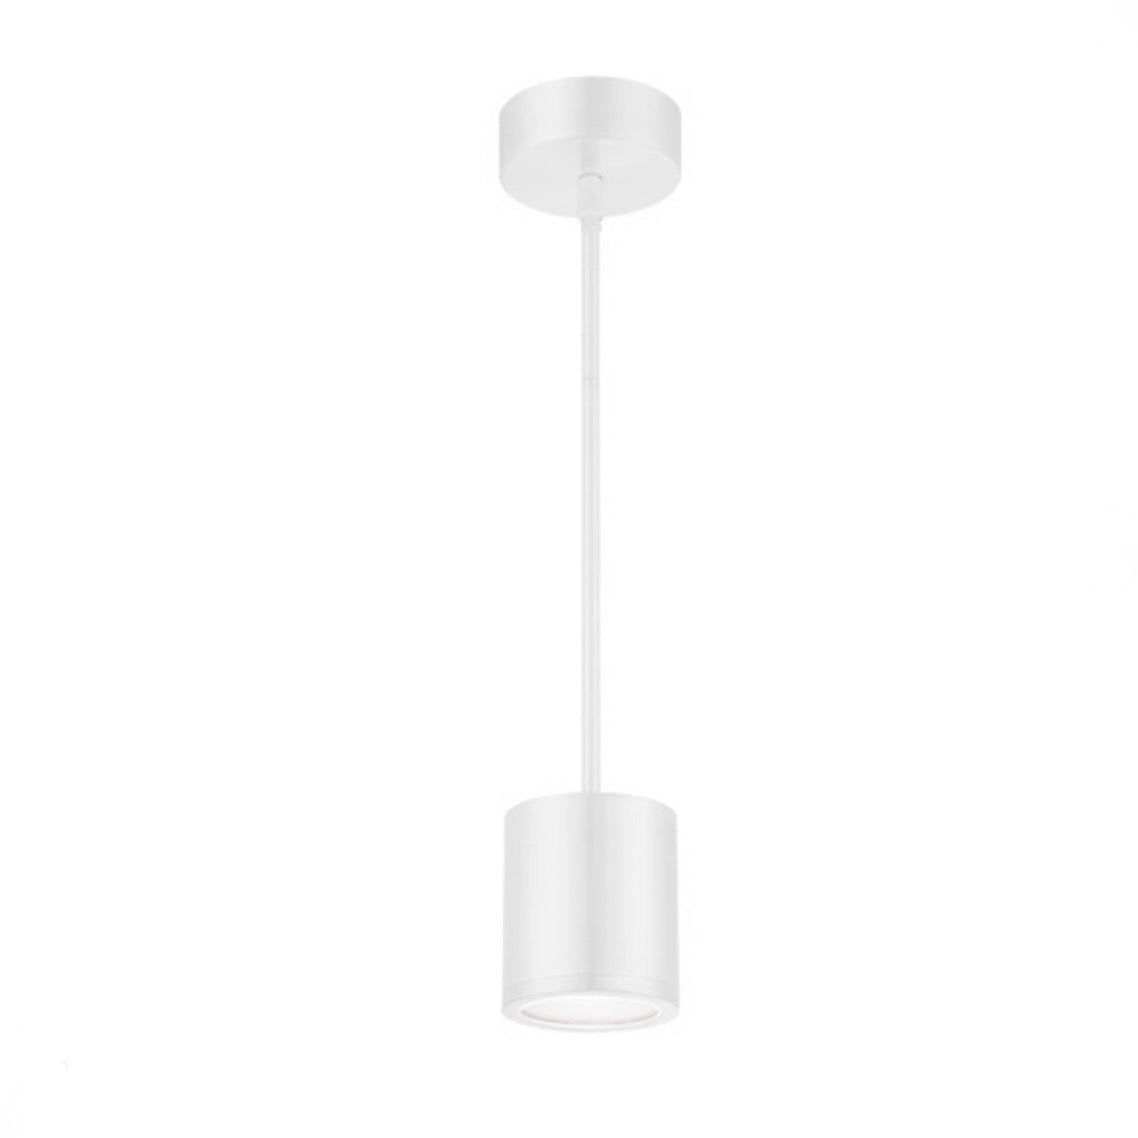 WAC Lighting | Tube LED Pendant Light in White